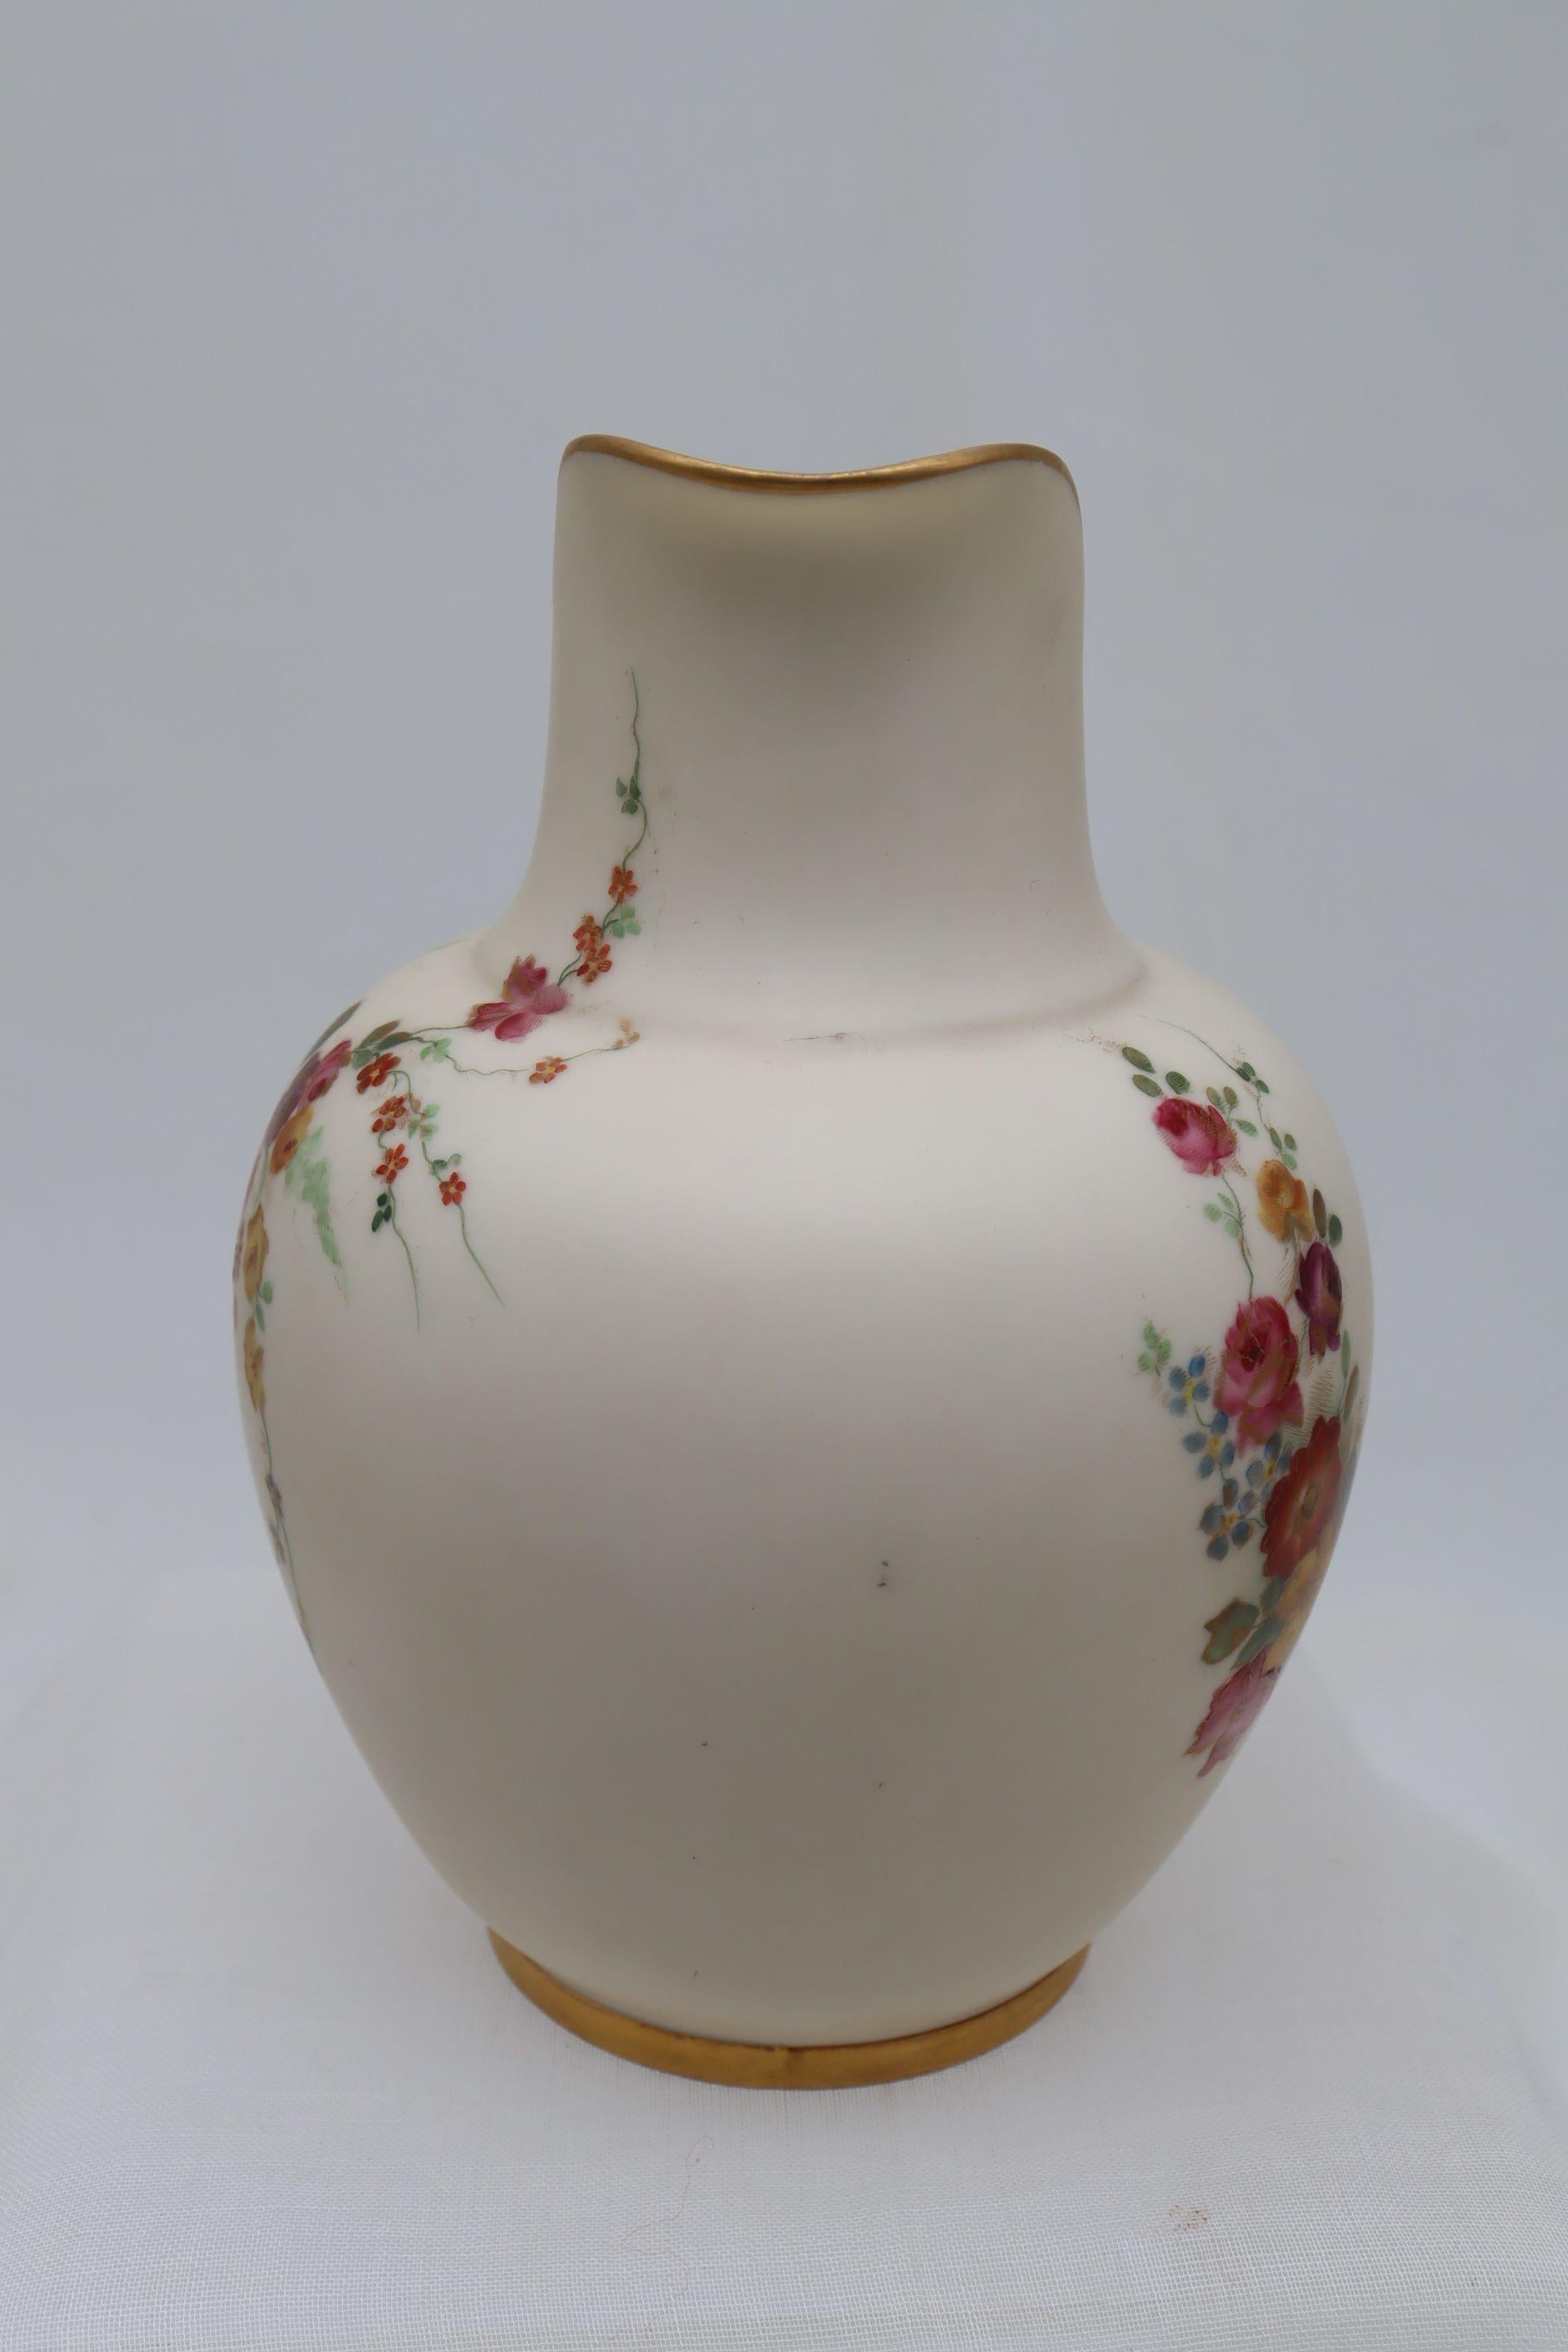 Cette cruche en porcelaine de Royal Worcester est décorée d'une gerbe de fleurs colorée à la main, rehaussée de dorures, sur un fond crème. Il y a une petite bombe au verso. La forme de la cruche est répertoriée sous le numéro 1094. Elle a été